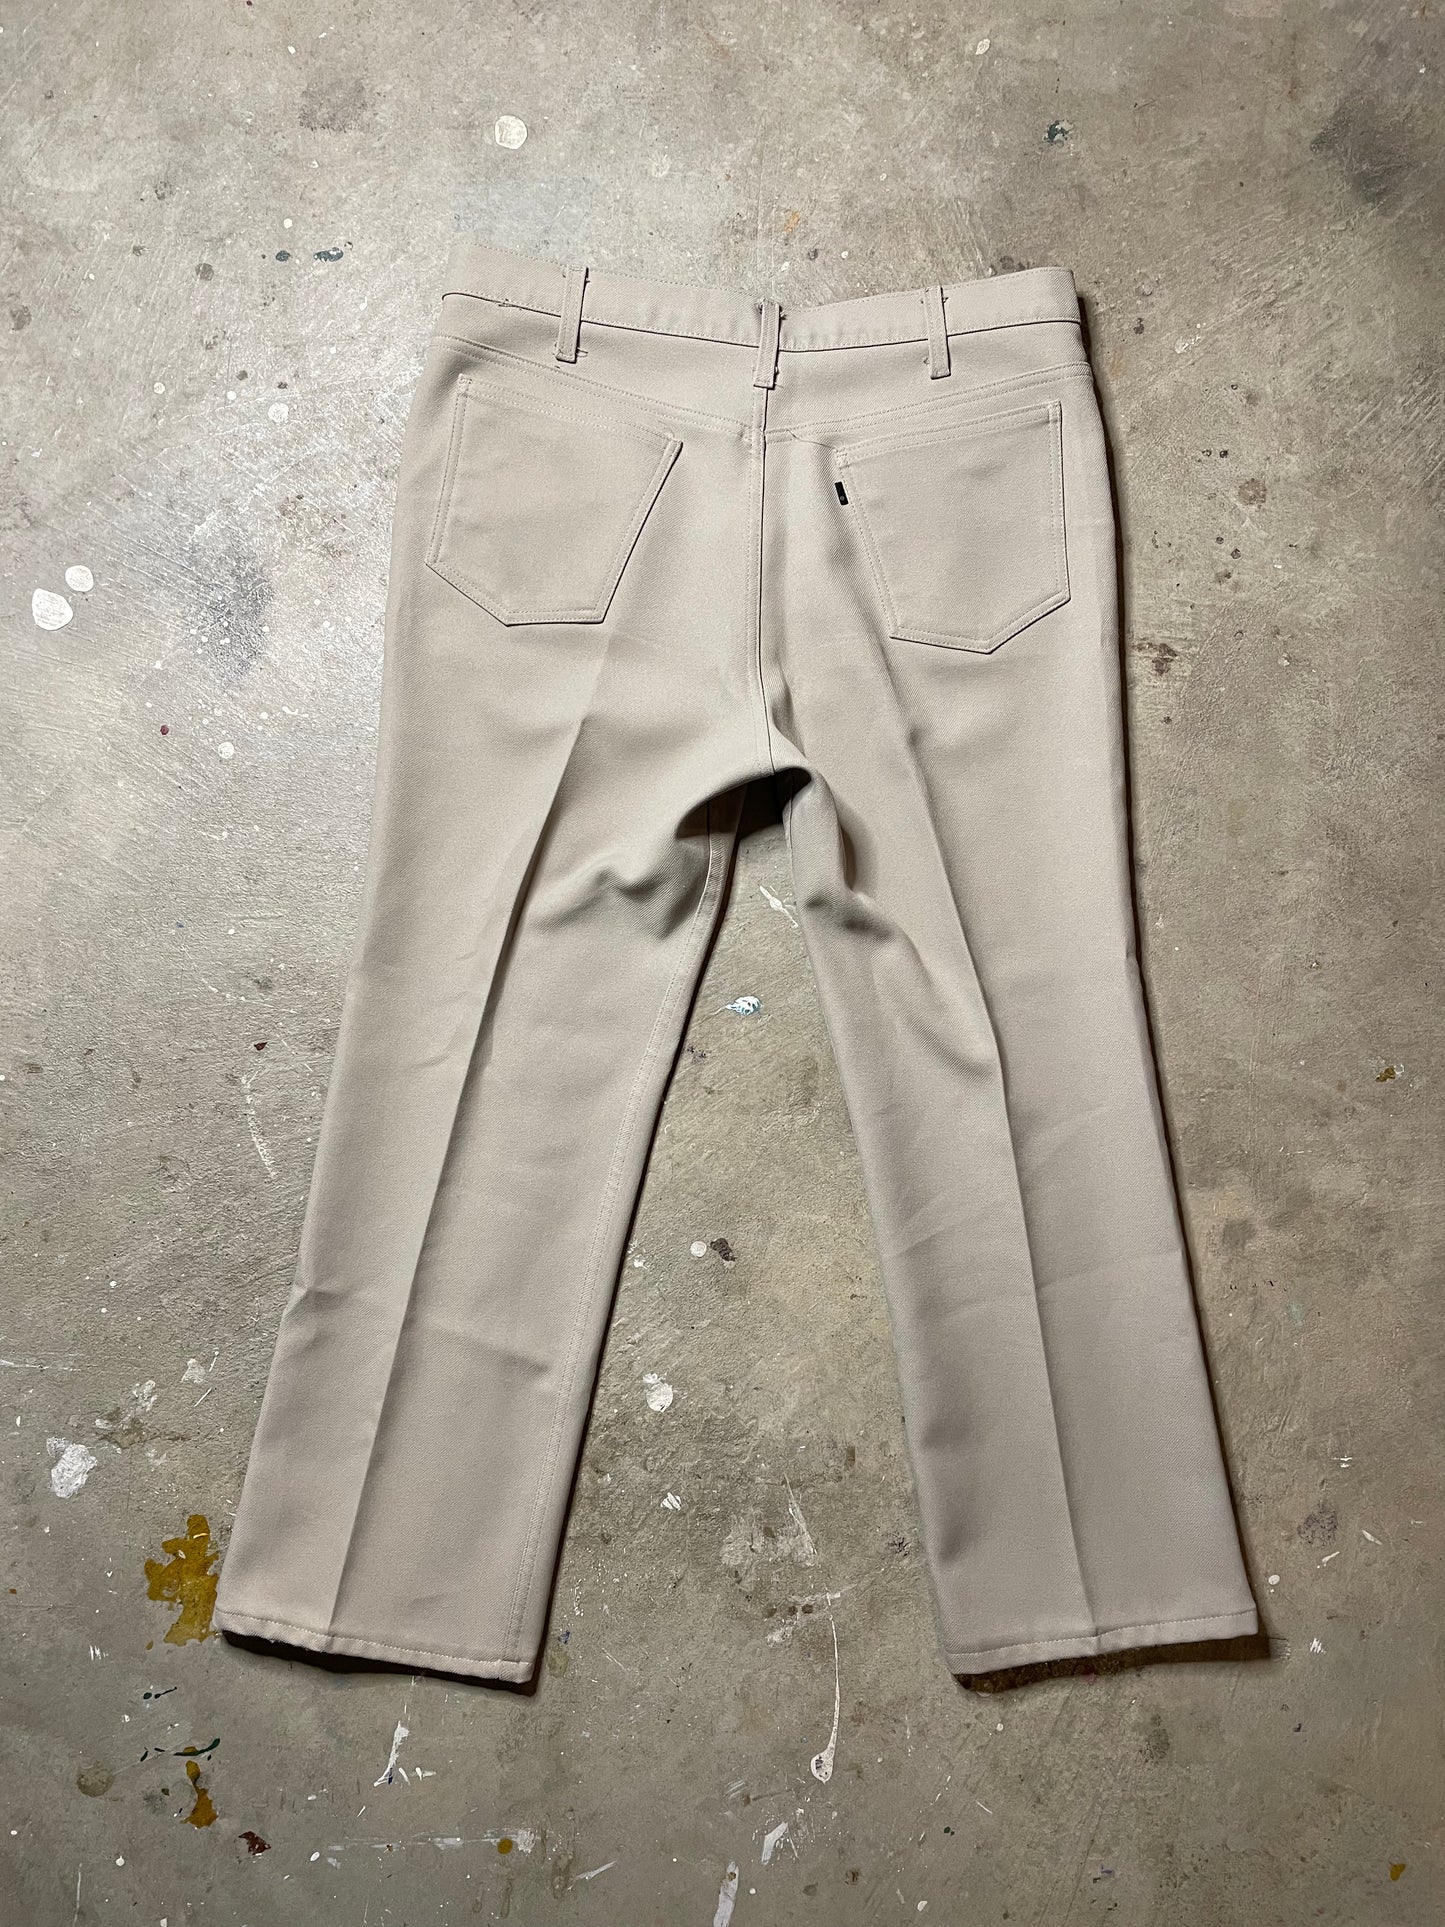 Vintage Levi’s Dress Pants